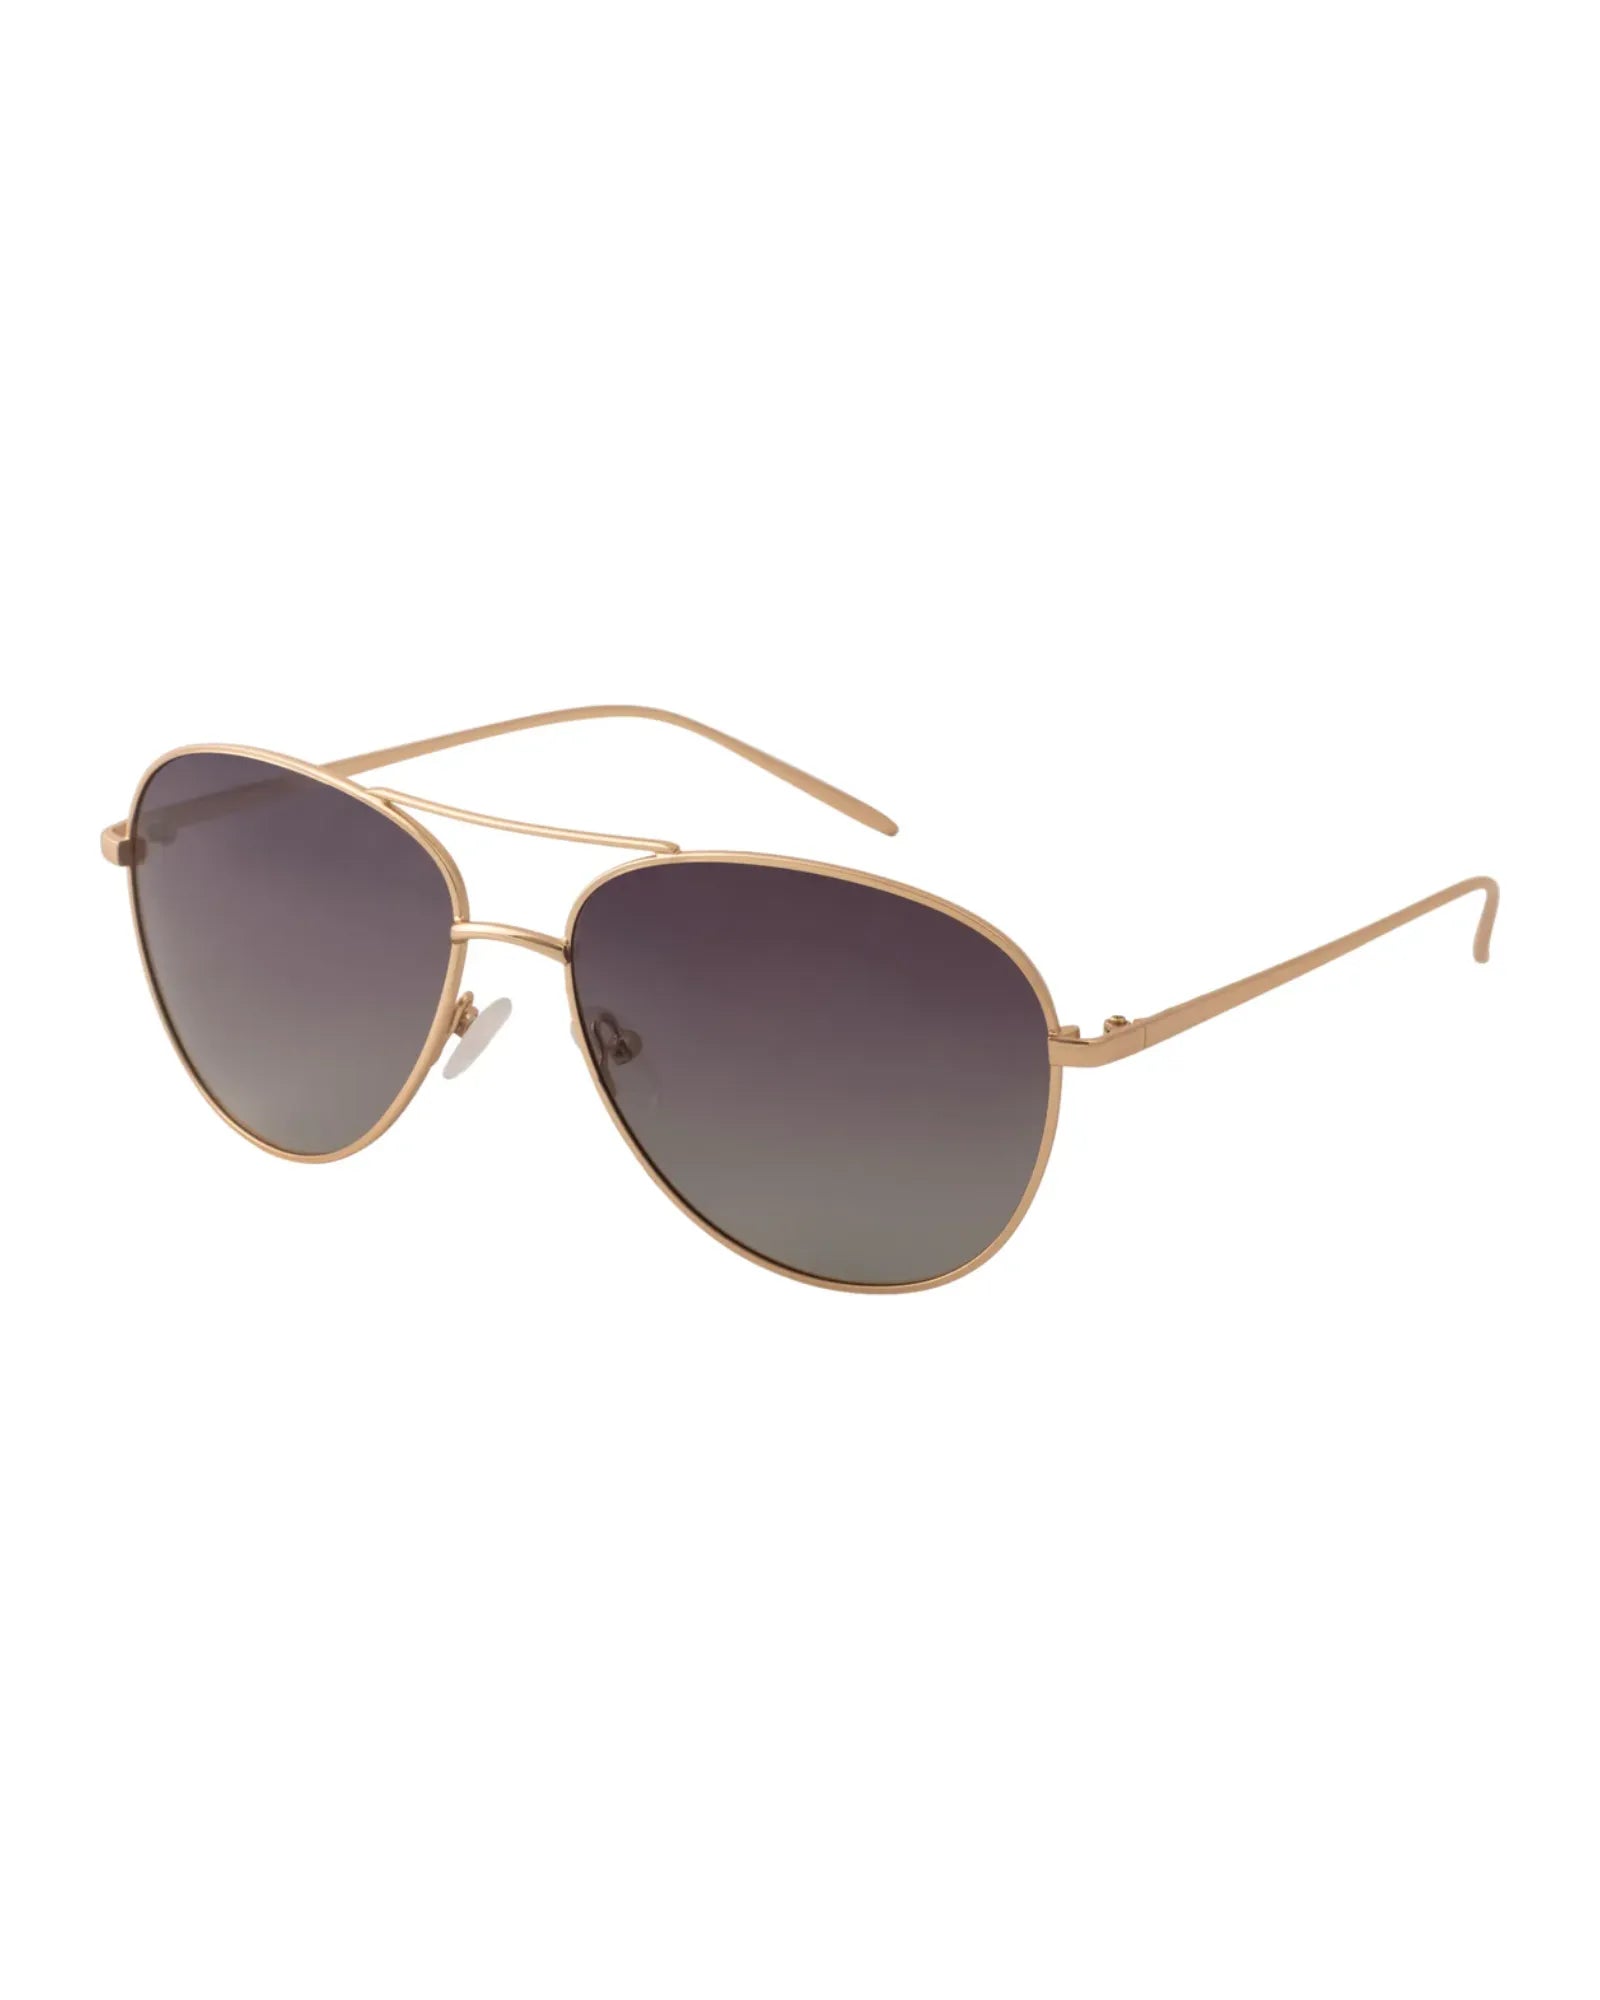 NANI Sunglasses - Grey/Gold